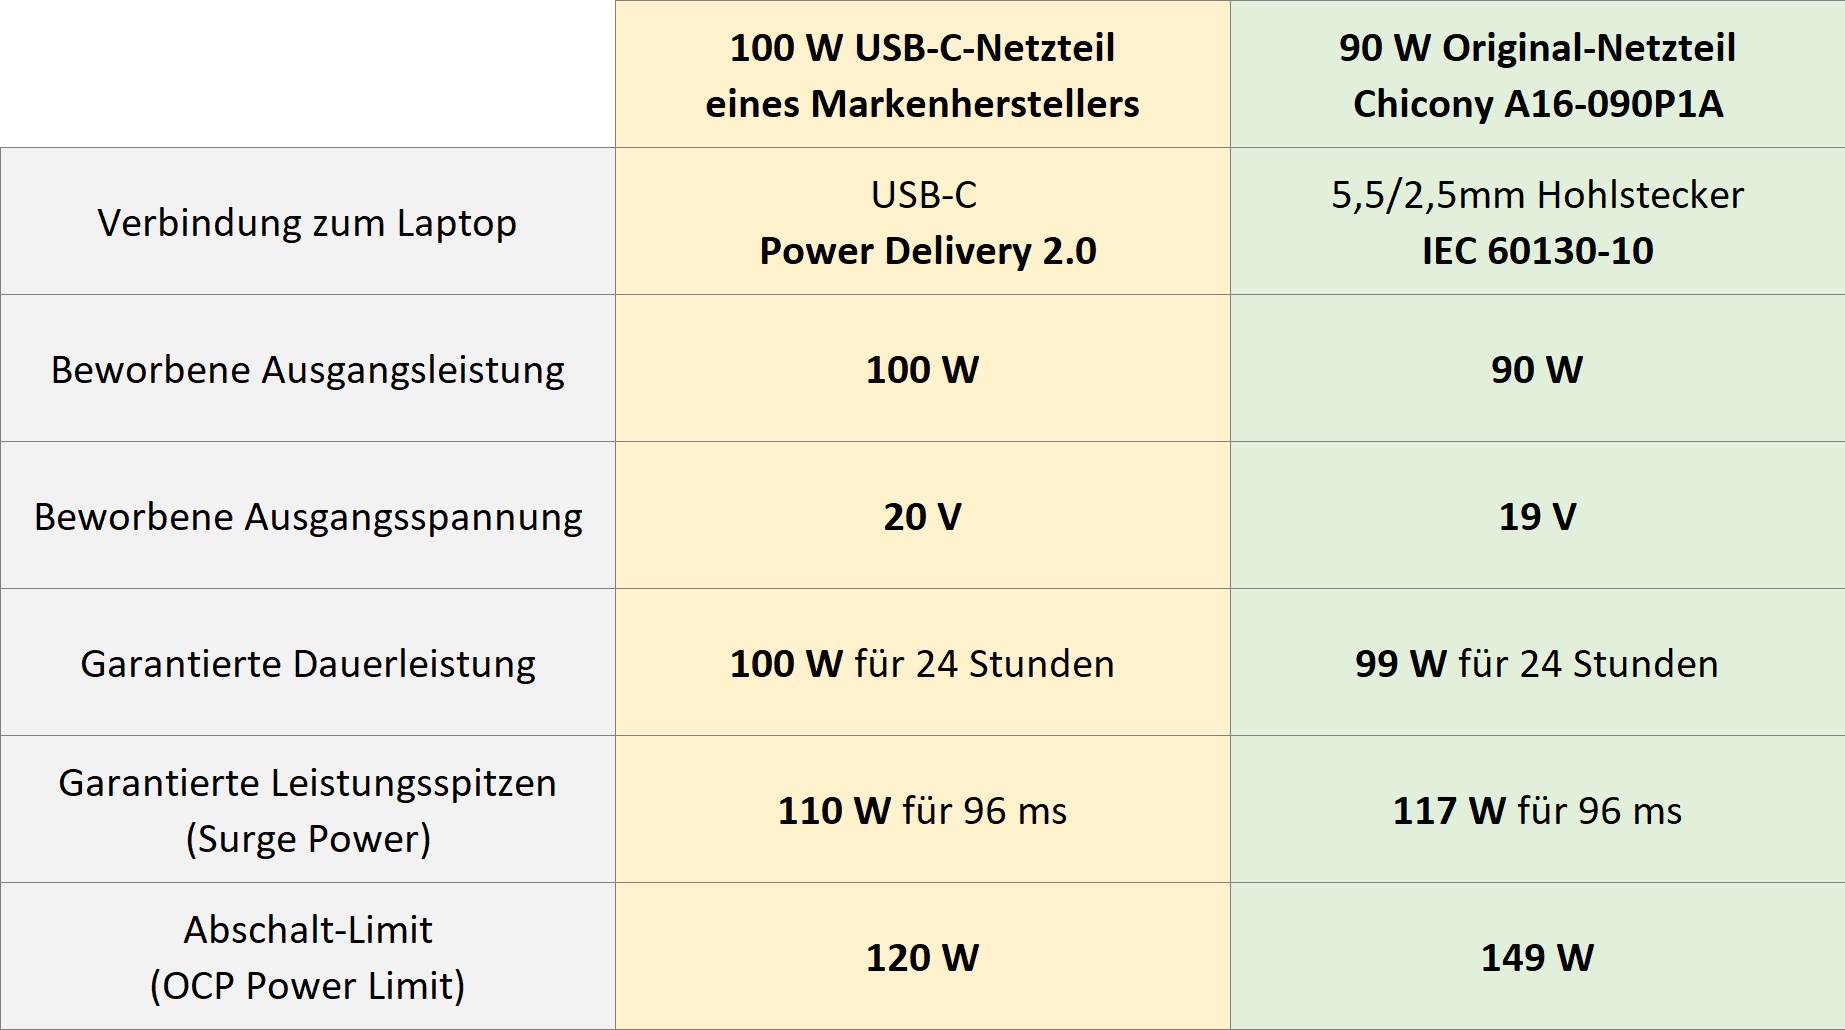 Tabelle vergleicht Leistungsfähigkeit von 90W-Original mit 100W-USB-C-Netzteil.